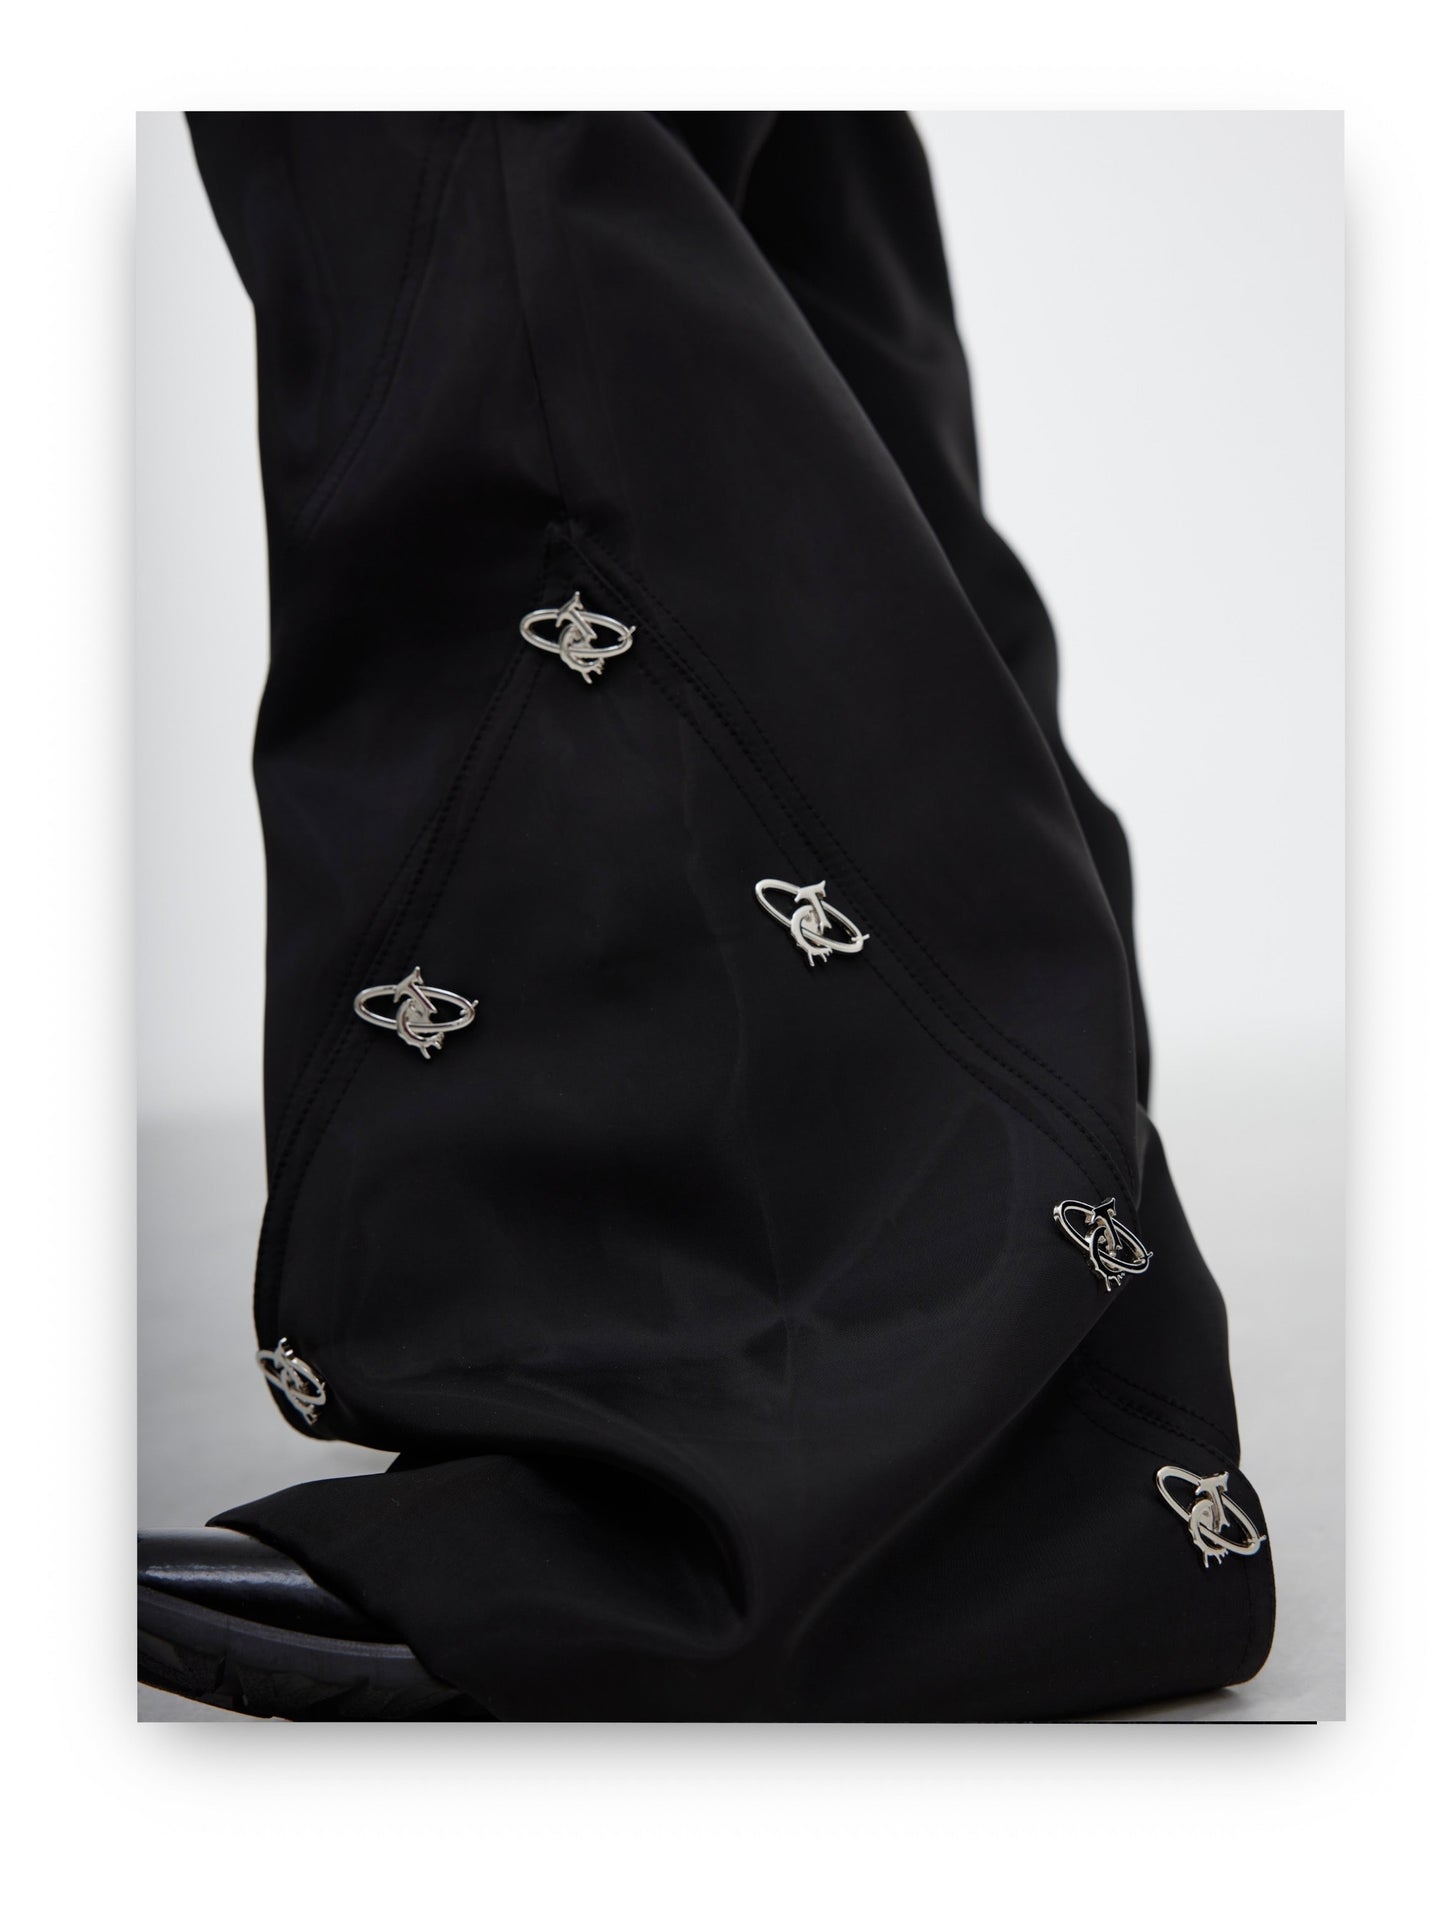 Shiny Loose Decorative Seam Pants | ARGUE CULTURE Collection [H445]